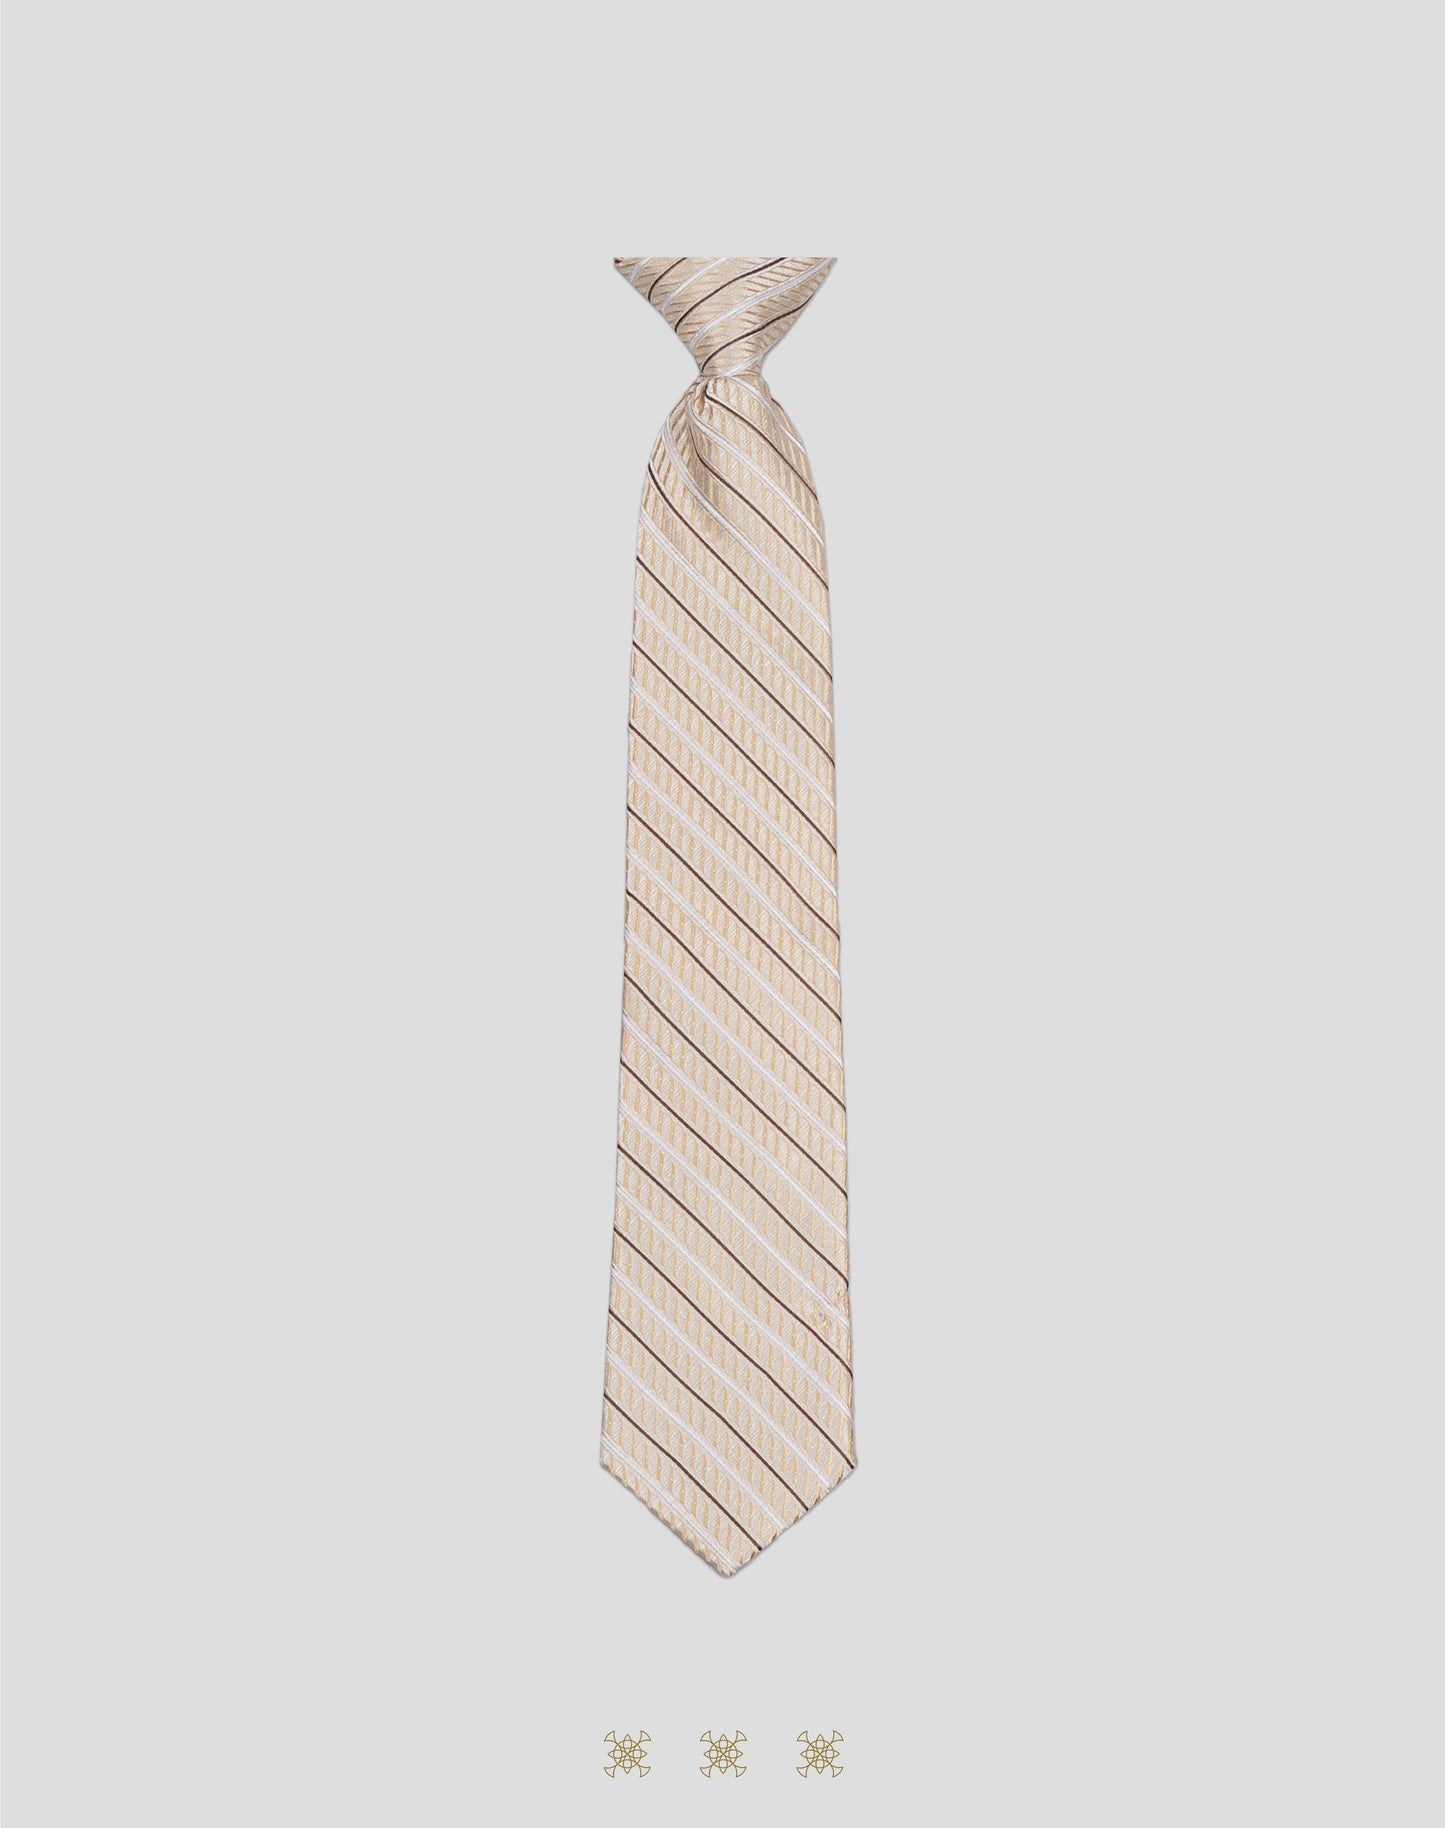 Corbata beige con nudo 33-074